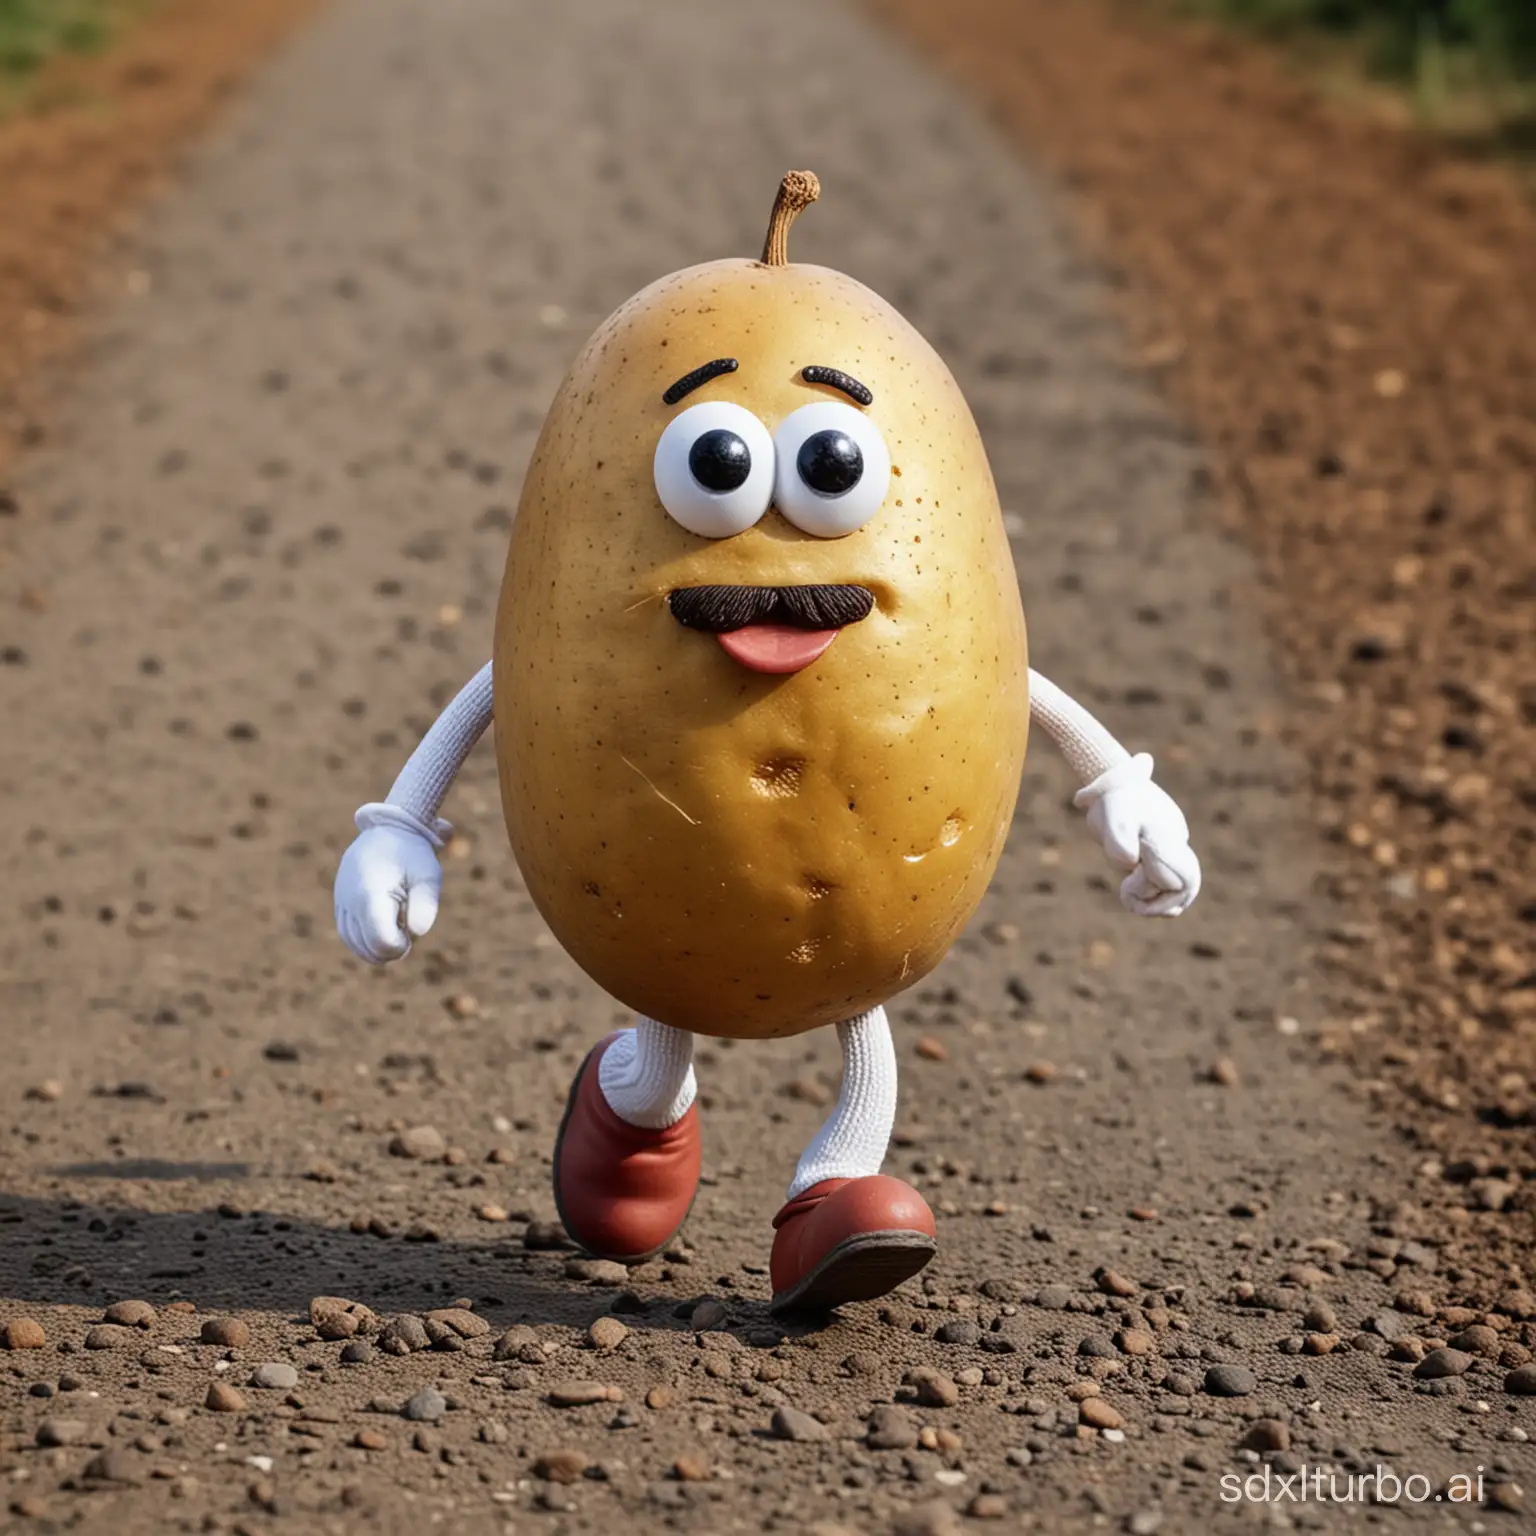 PotatoMan-Running-in-a-Whimsical-World